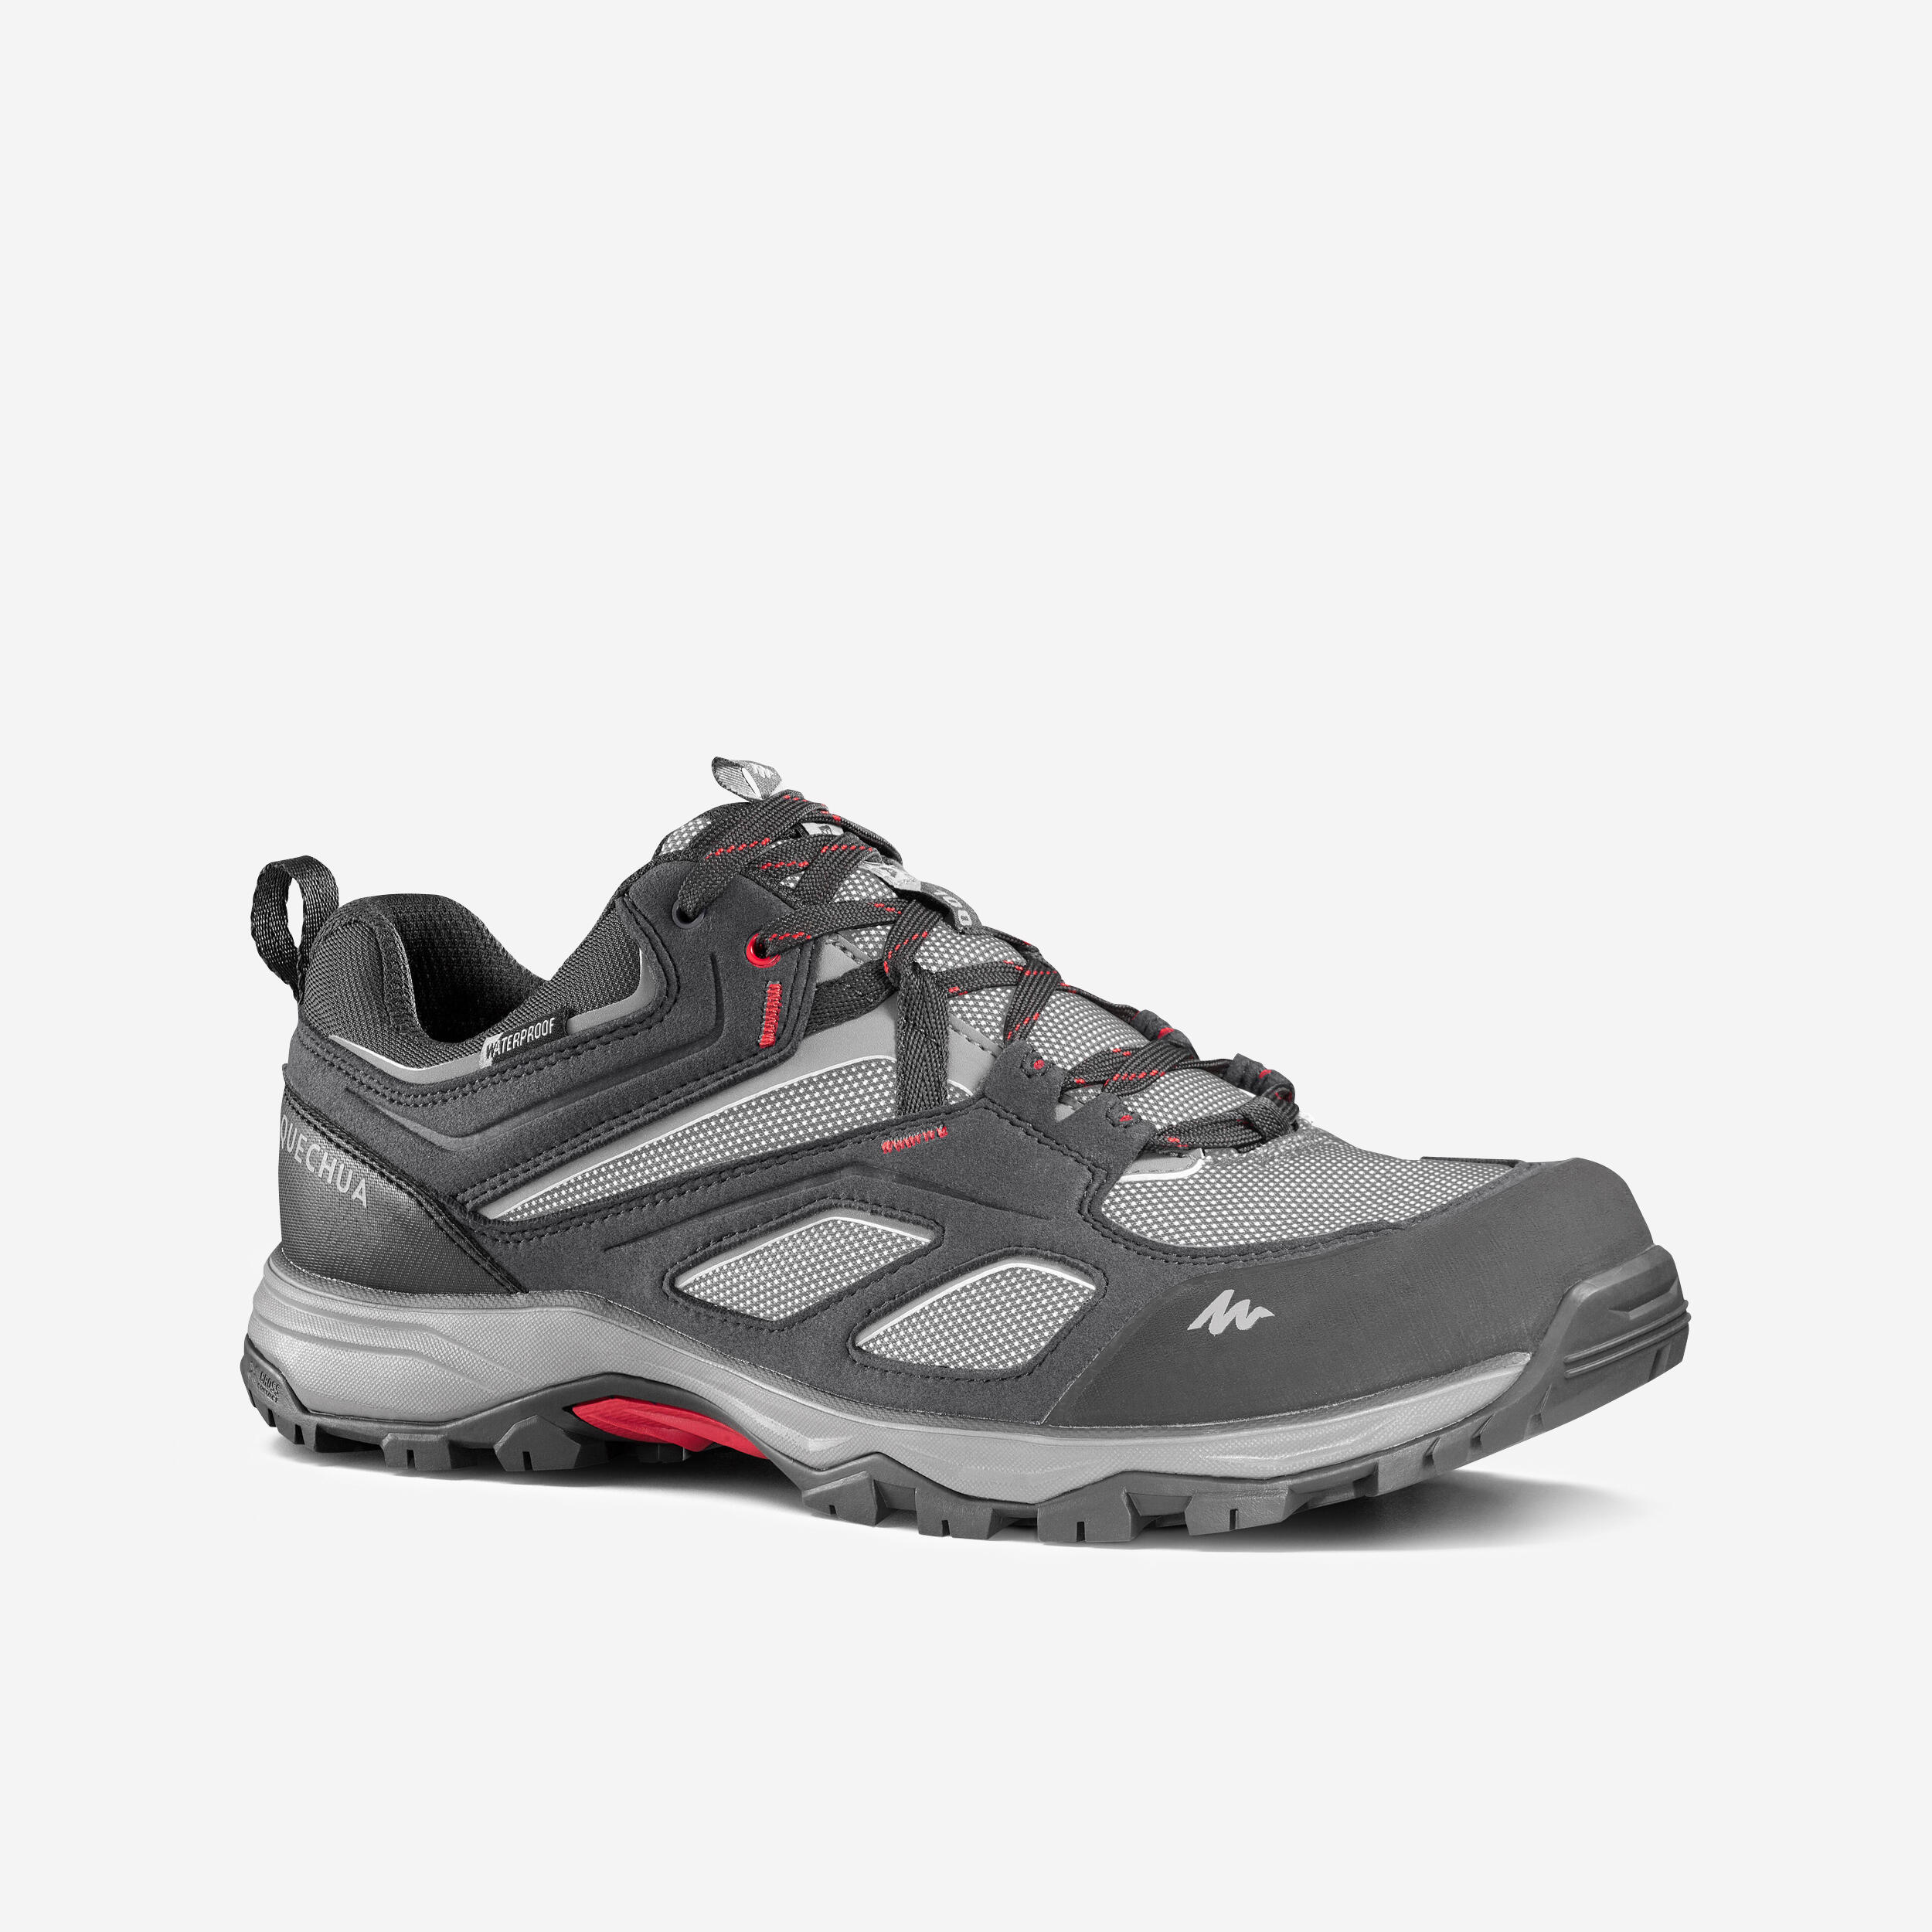 Men's waterproof mountain hiking shoes - MH100 - Grey 1/8